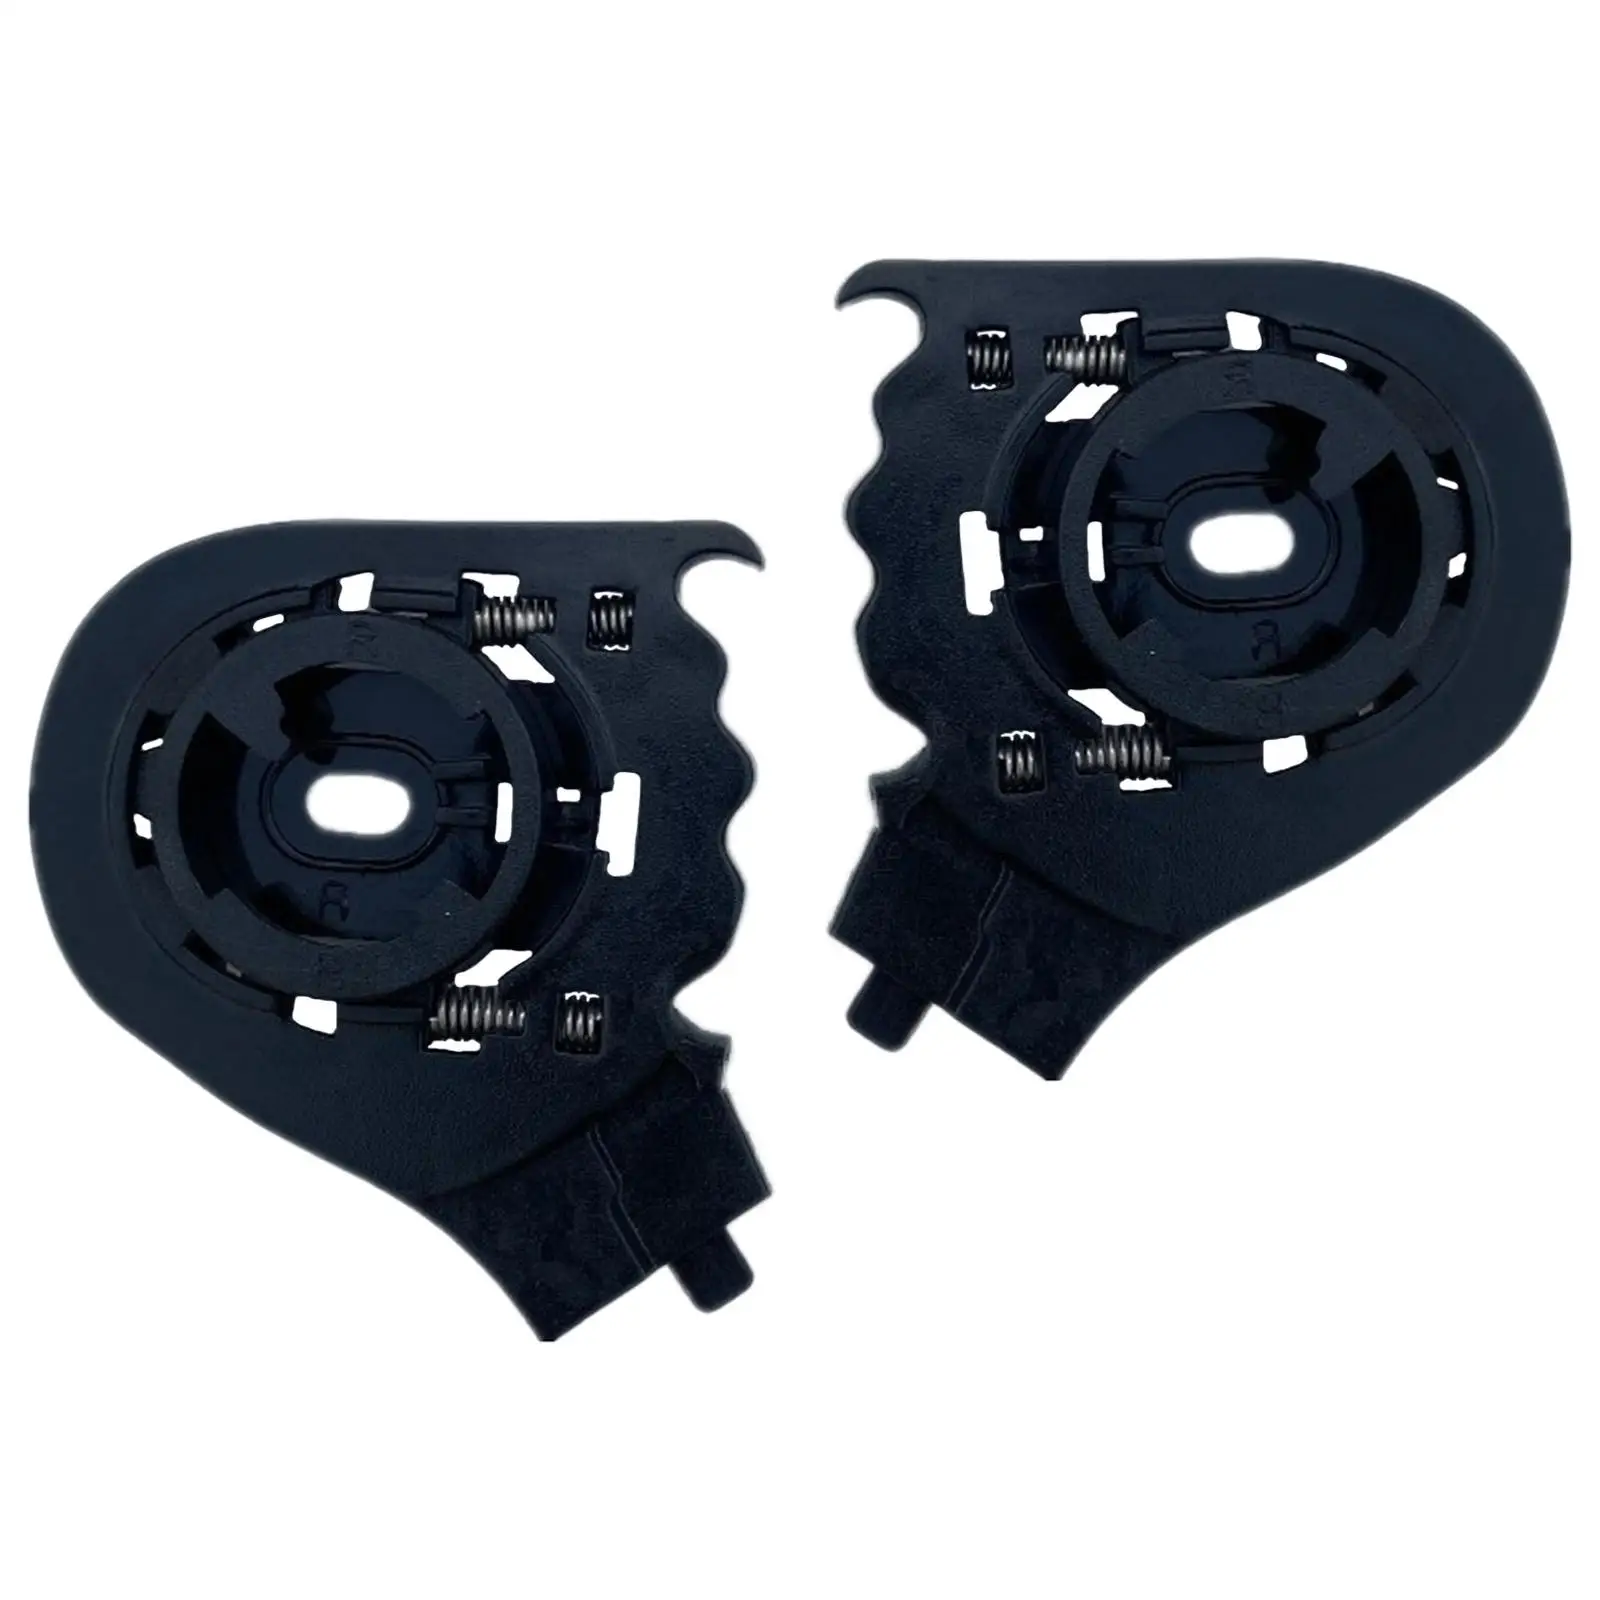 2Pcs Motorcycle Helmet Lens Base Helmets Visor Base for LS2 OF569 OF578 Helmet Visor Accessories Repair Tool Black